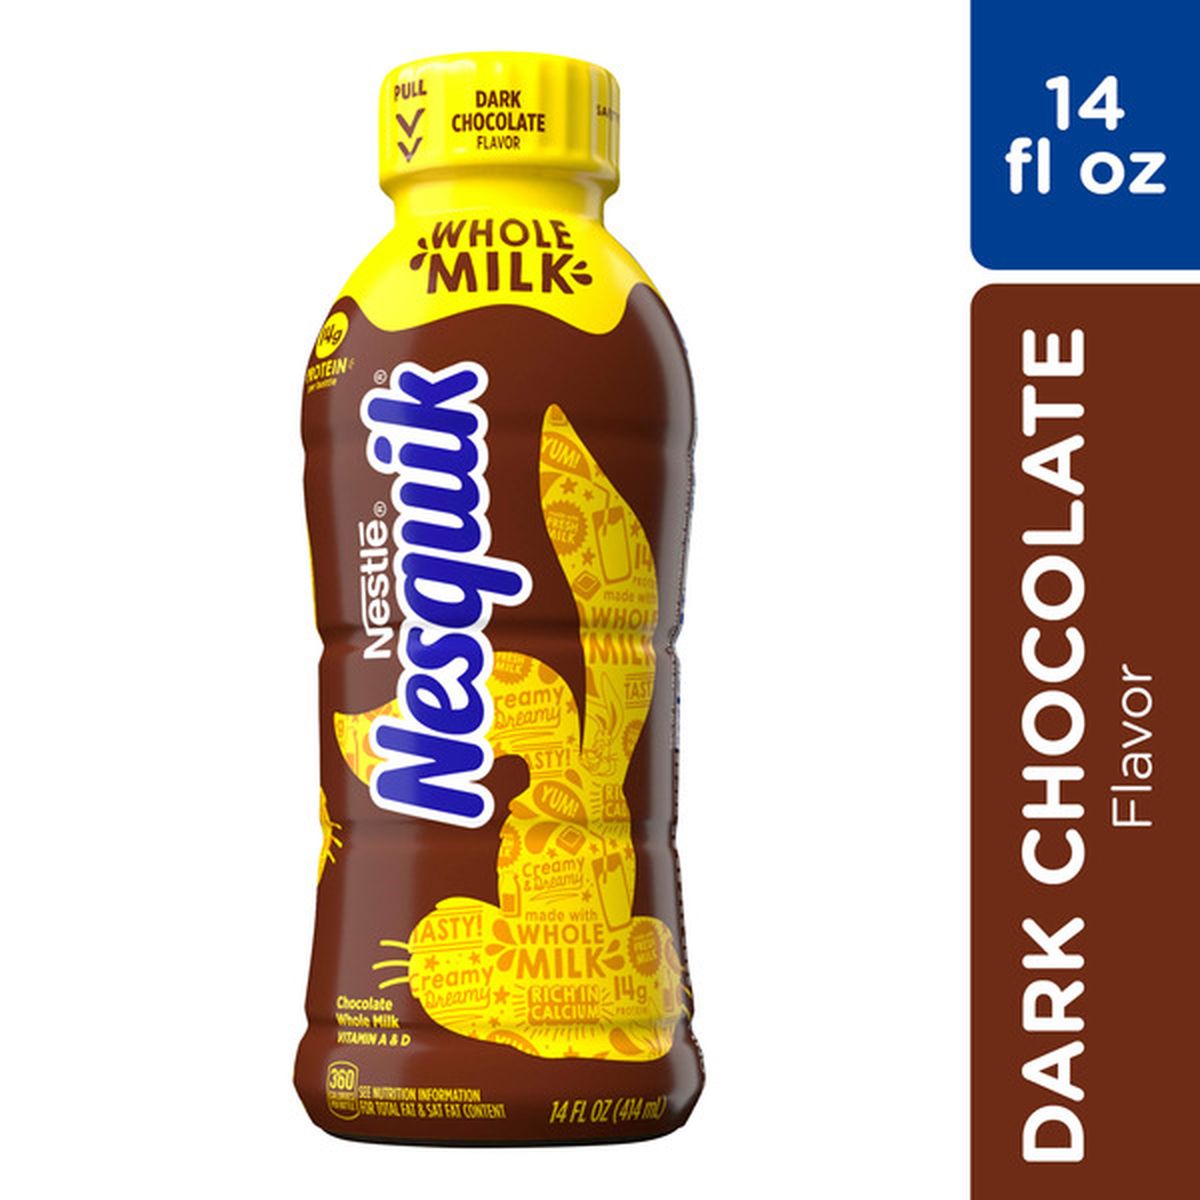 Milk & Dark Chocolate Kidney – Mueller Chocolate Co